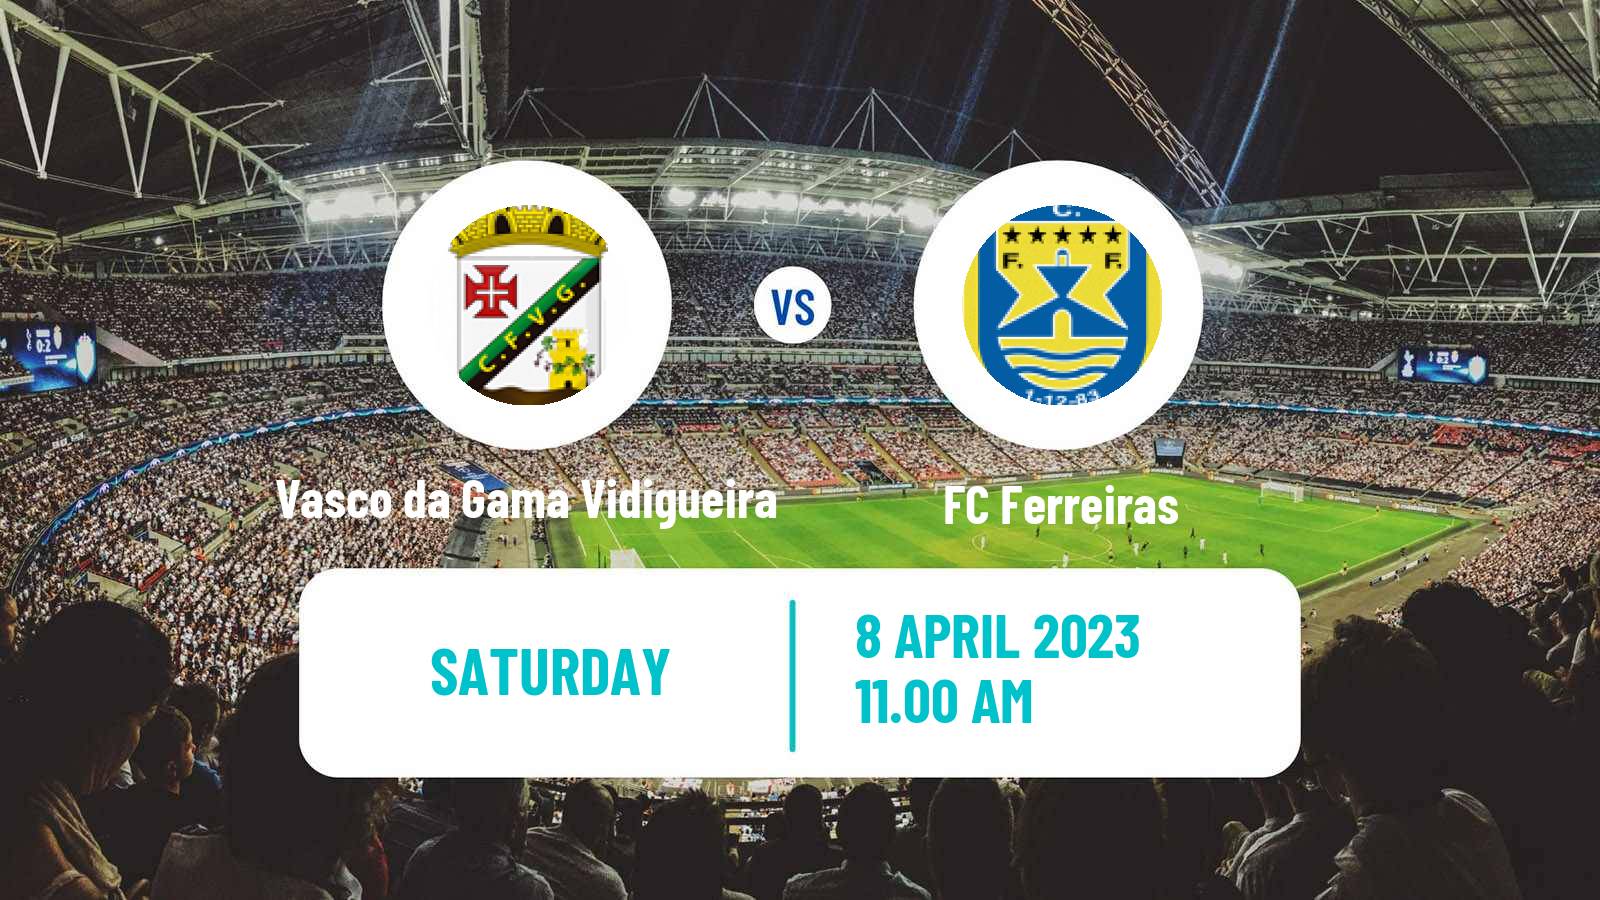 Soccer Campeonato de Portugal Vasco da Gama Vidigueira - Ferreiras